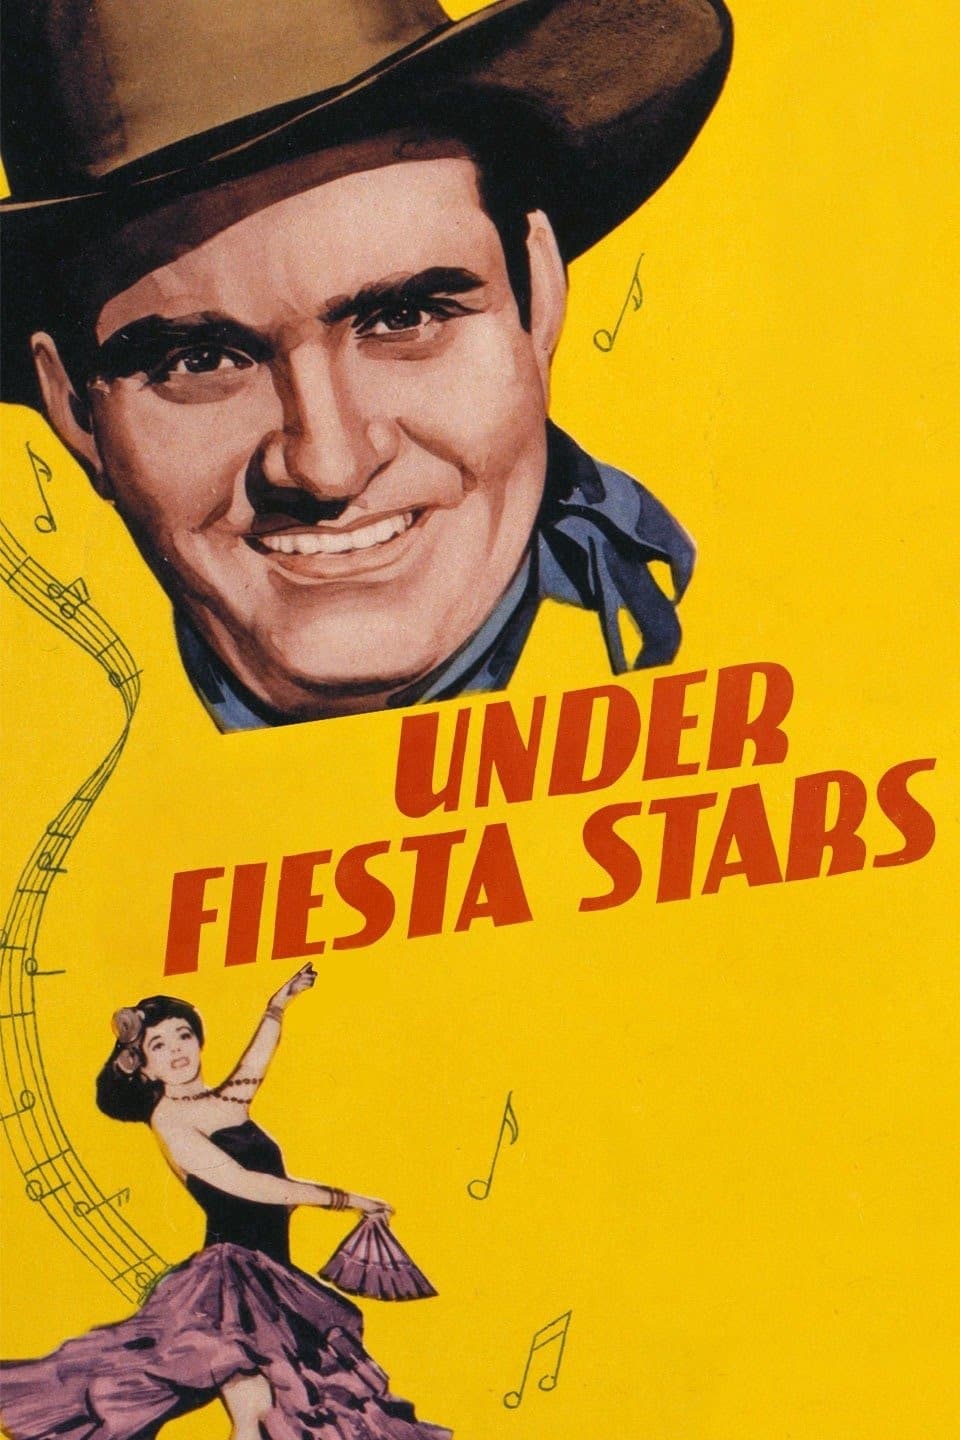 Under Fiesta Stars